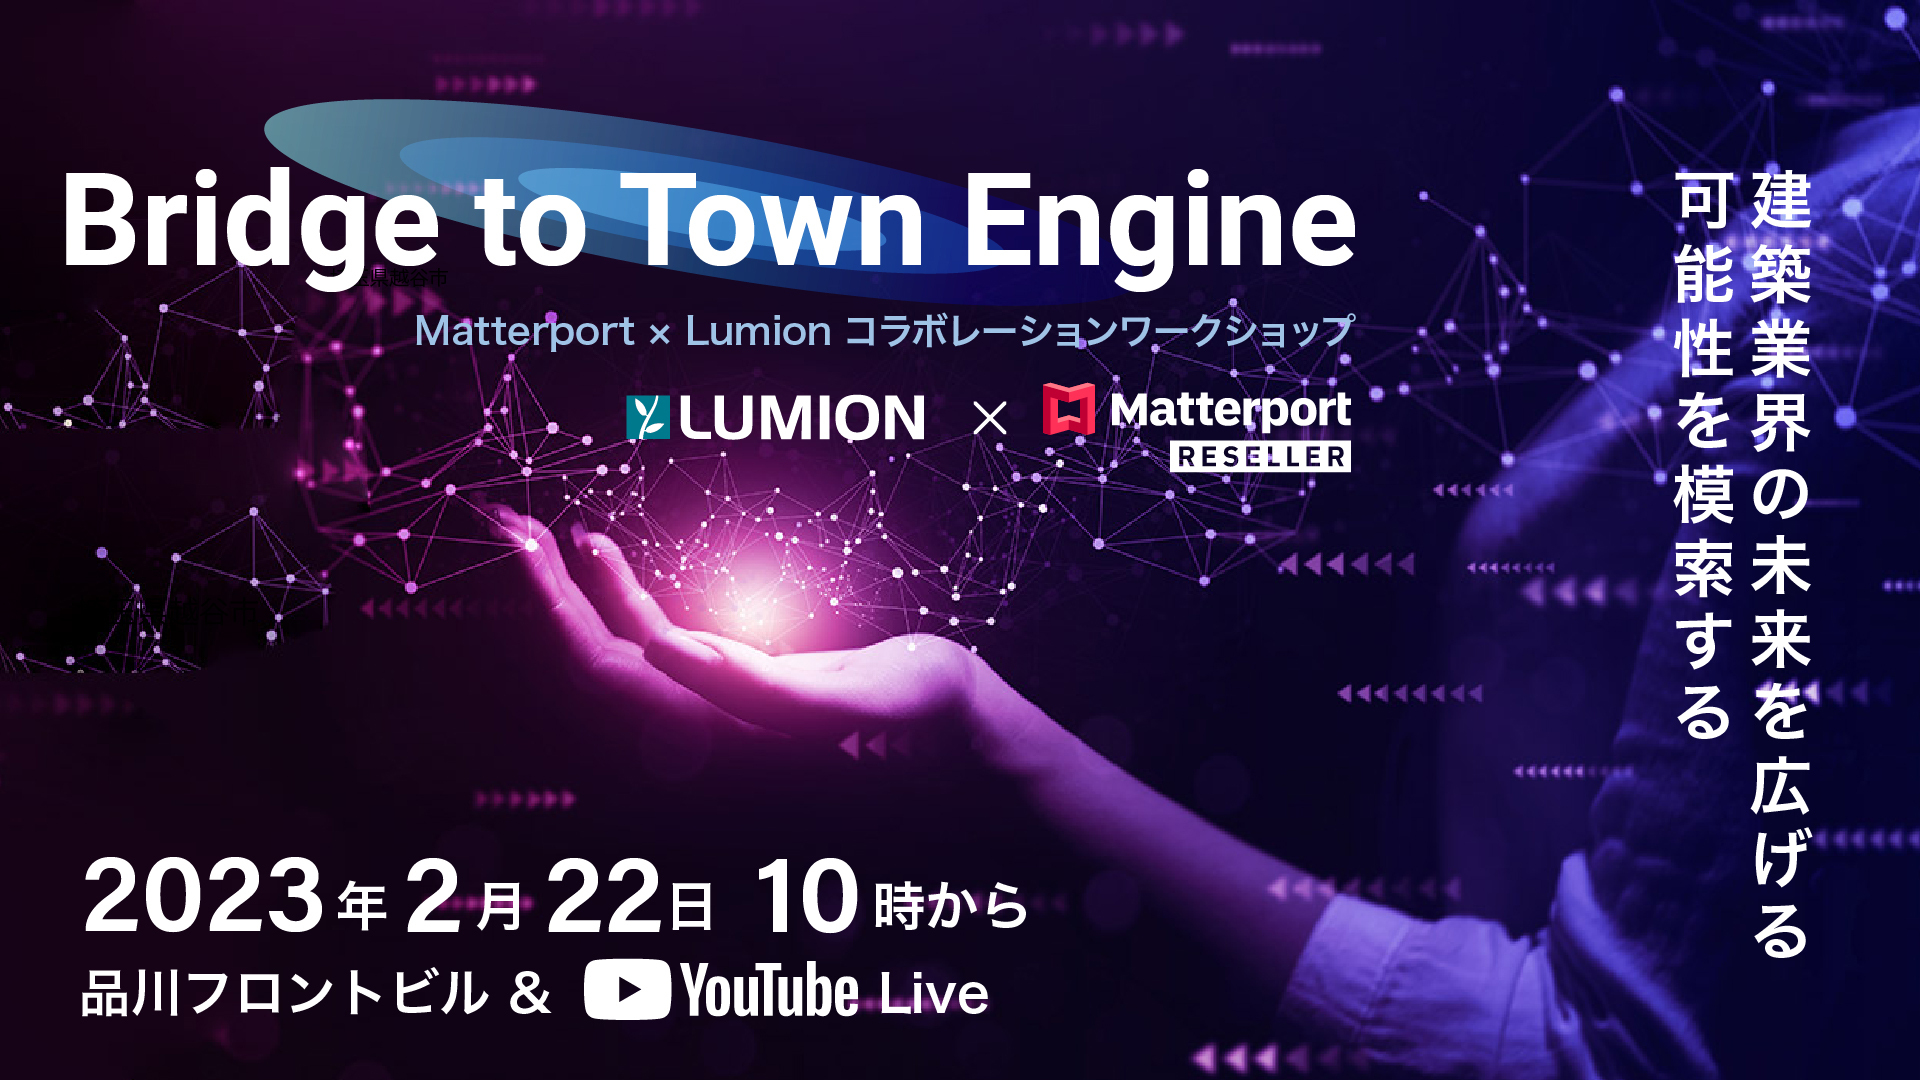 Matterport × Lumion コラボレーションワークショップを開催します